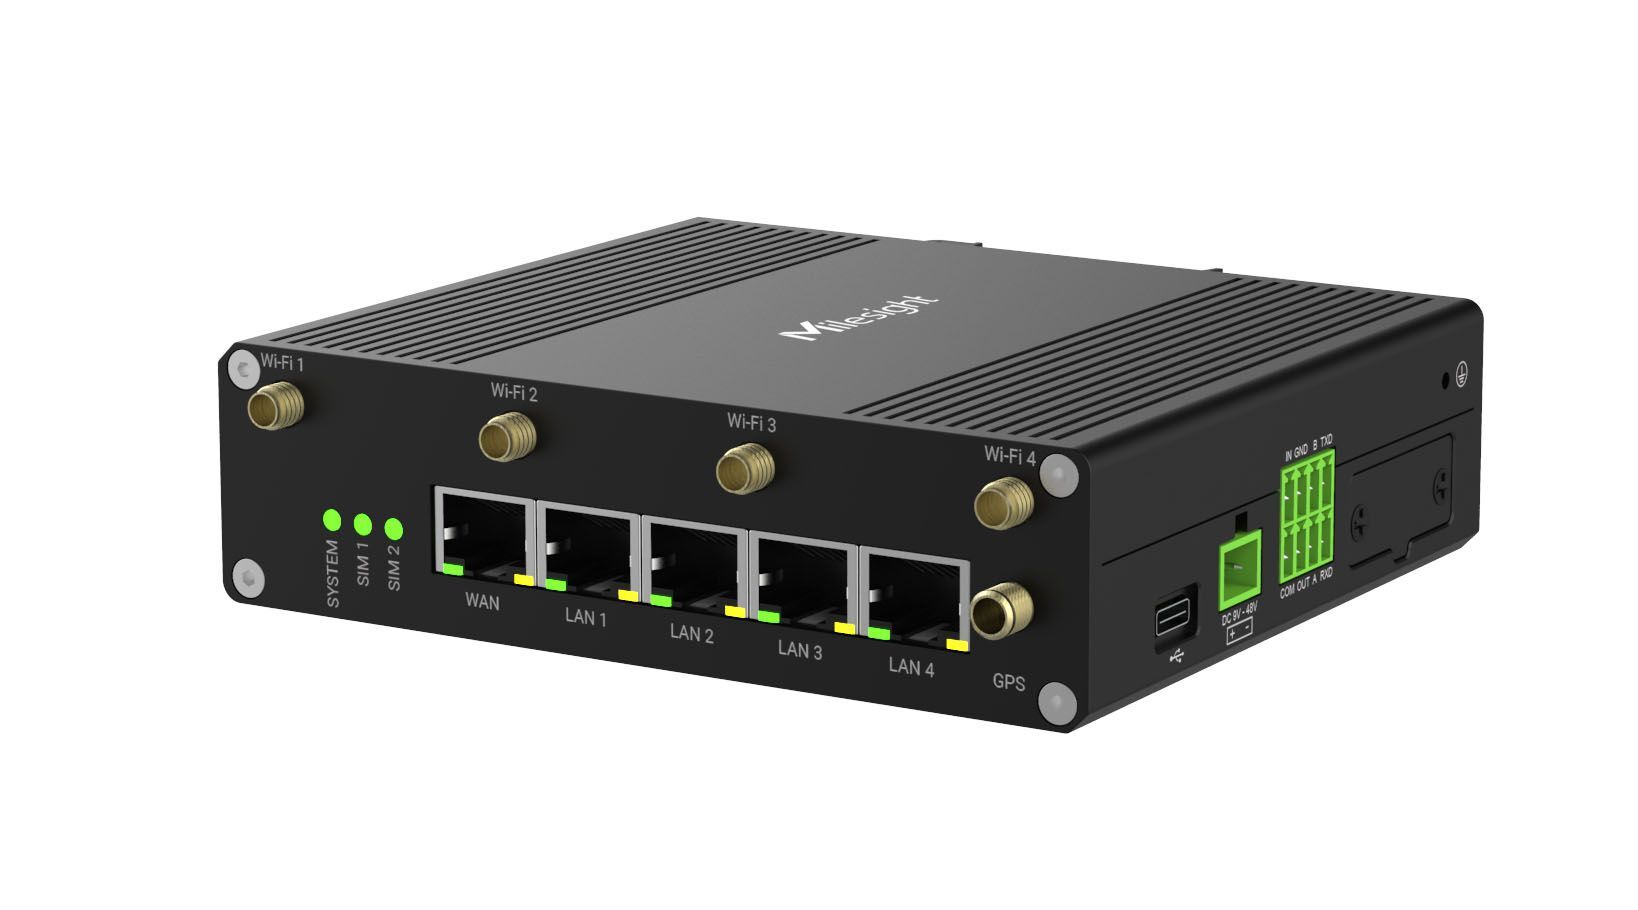 UR75-500GL-G-W 5G router, Wi-Fi, GPS, WAN + 4x LAN